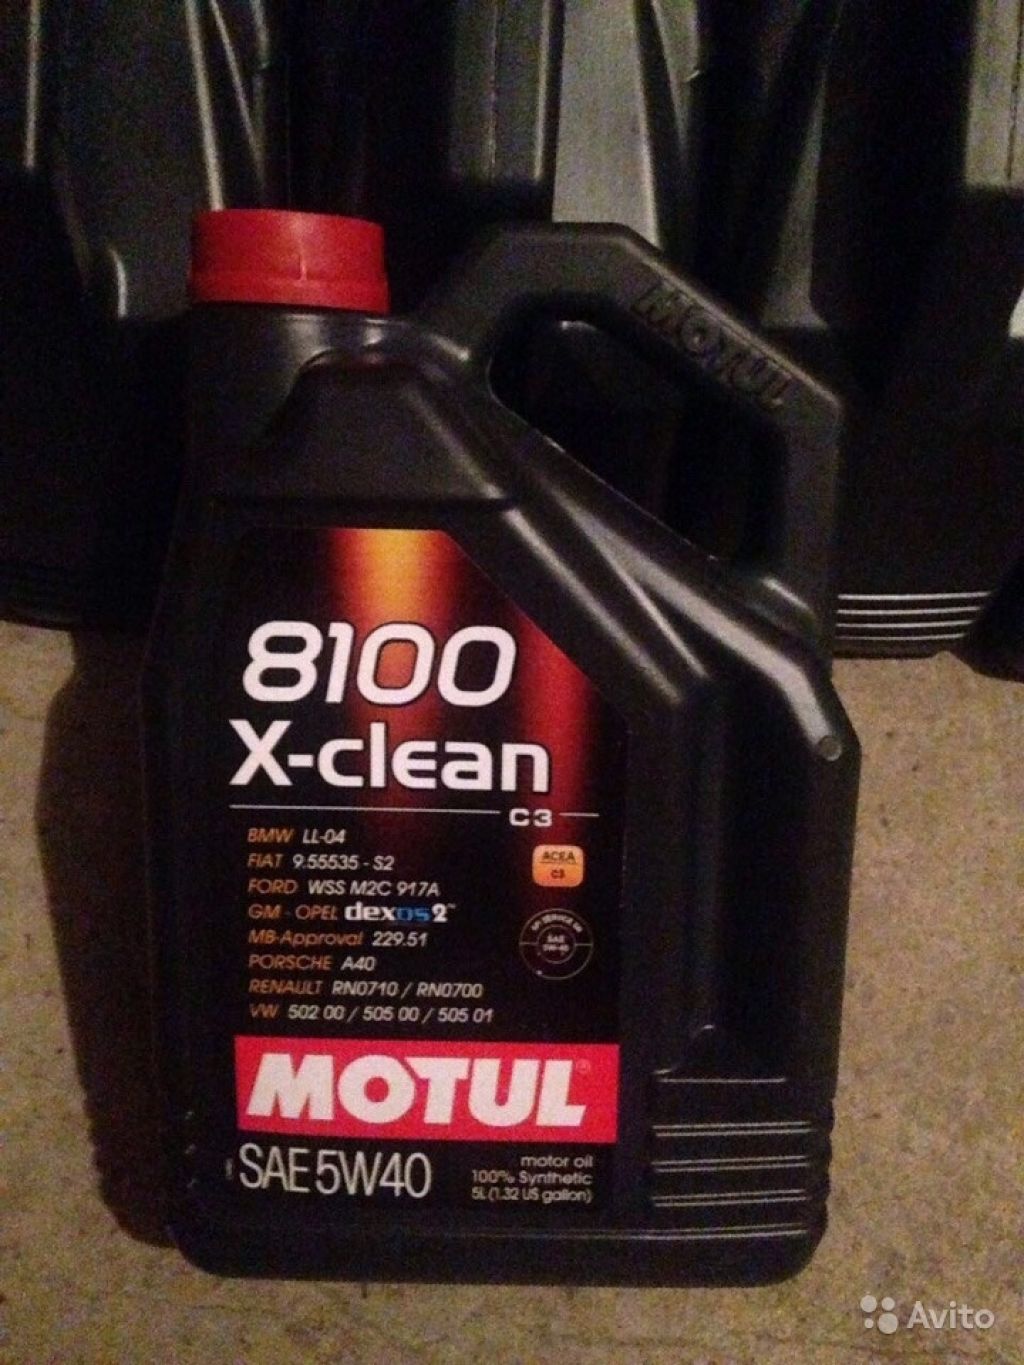 Motul x clean 5w40